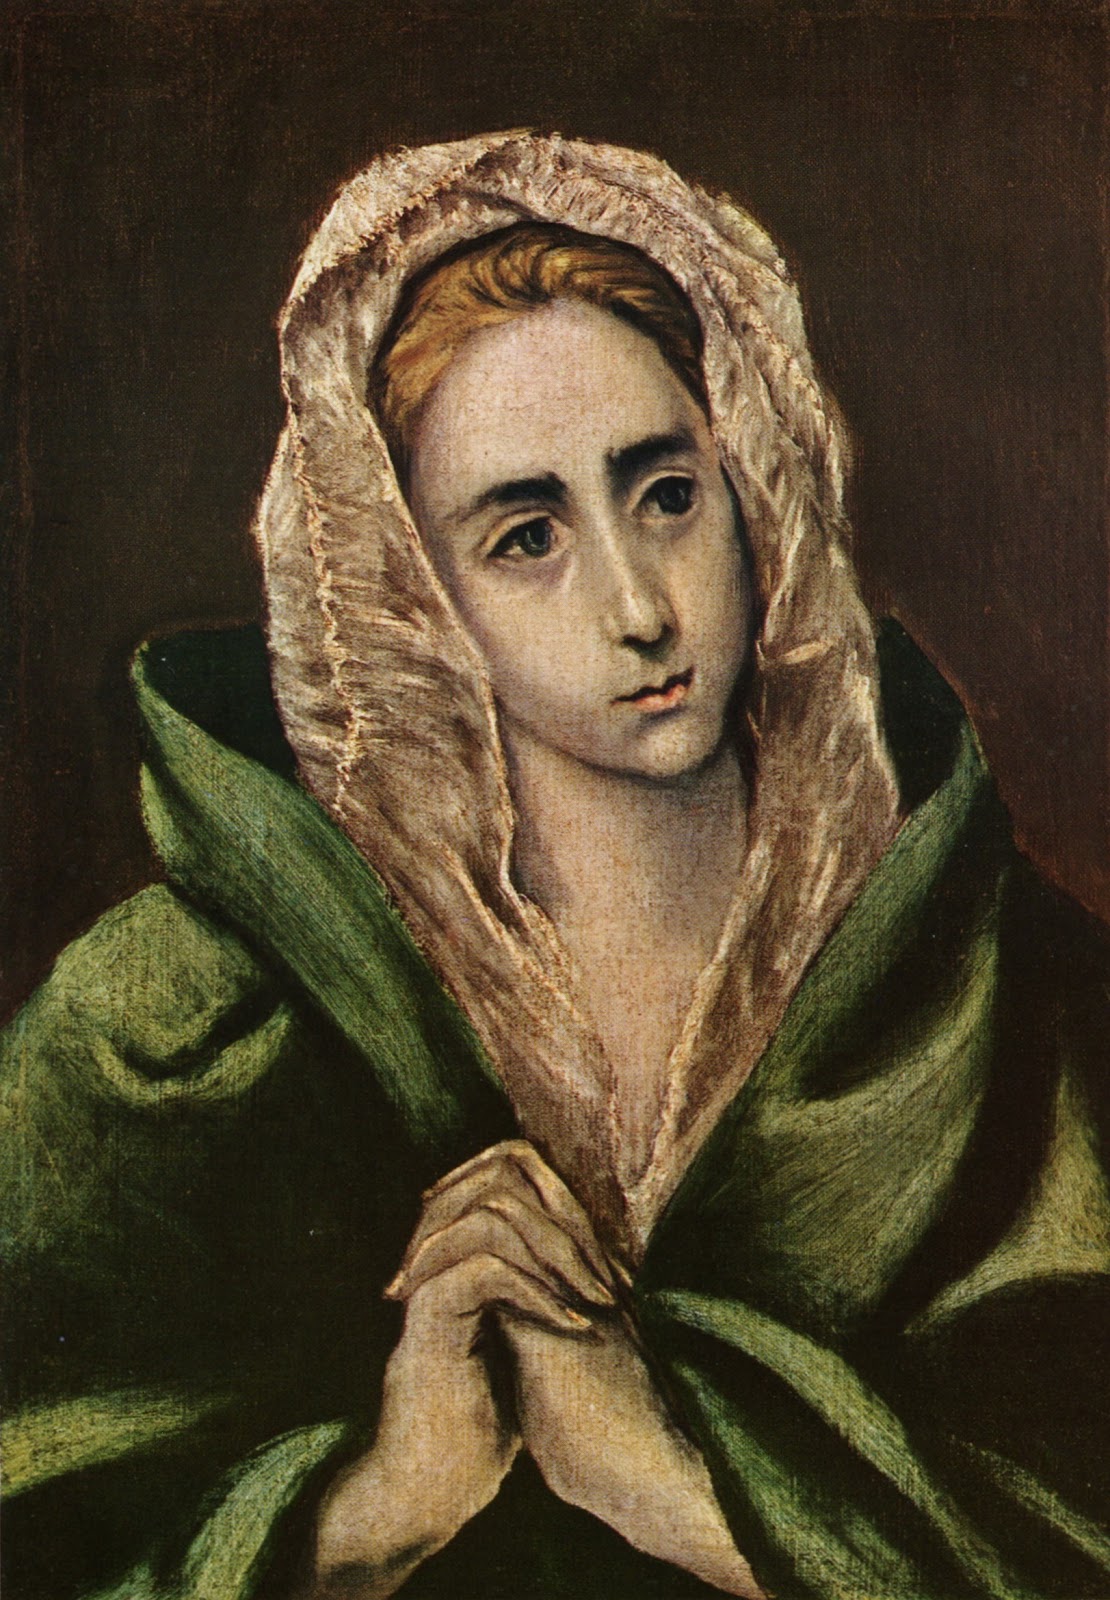 El+Greco-1541-1614 (252).jpg